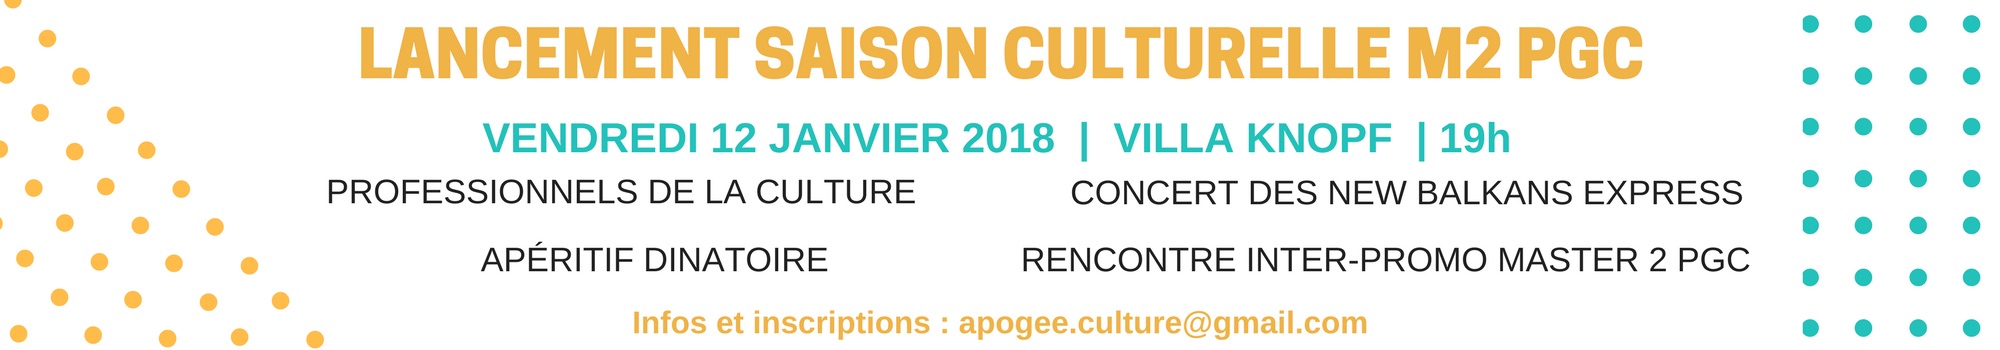 Lancement de la saison culturelle 2017-2018 PGC